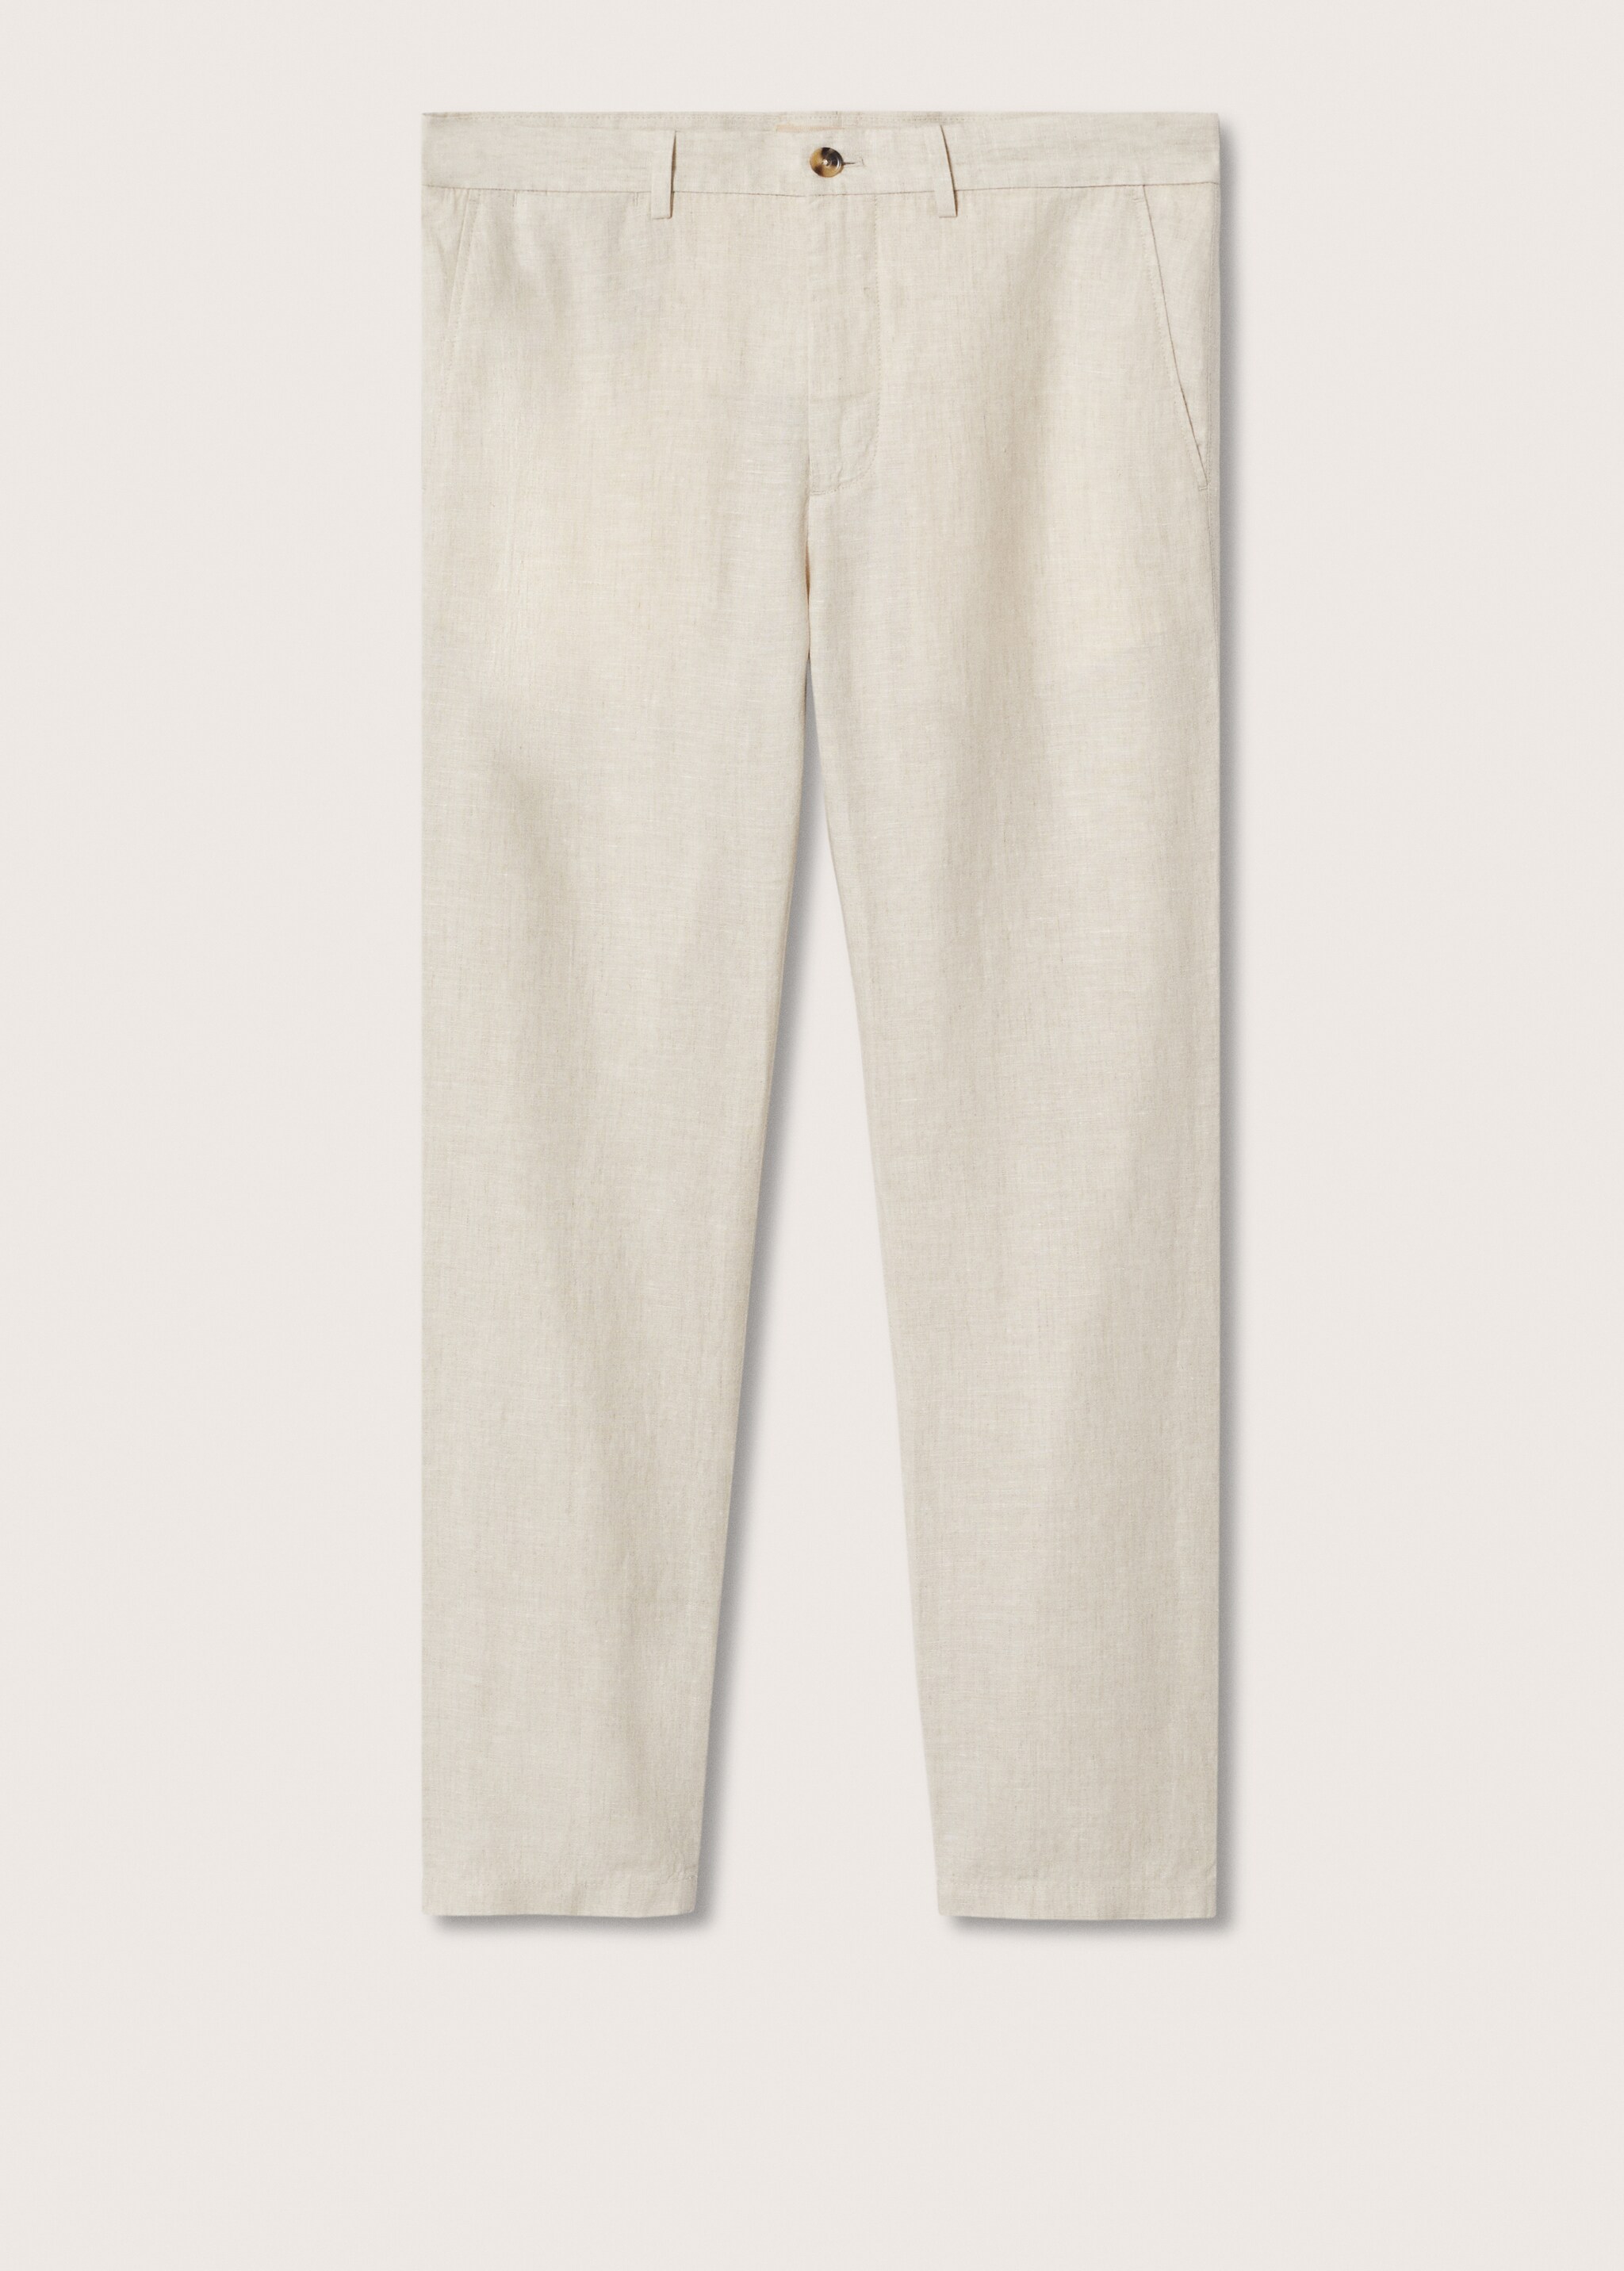 Pantalón lino slim fit - Artículo sin modelo